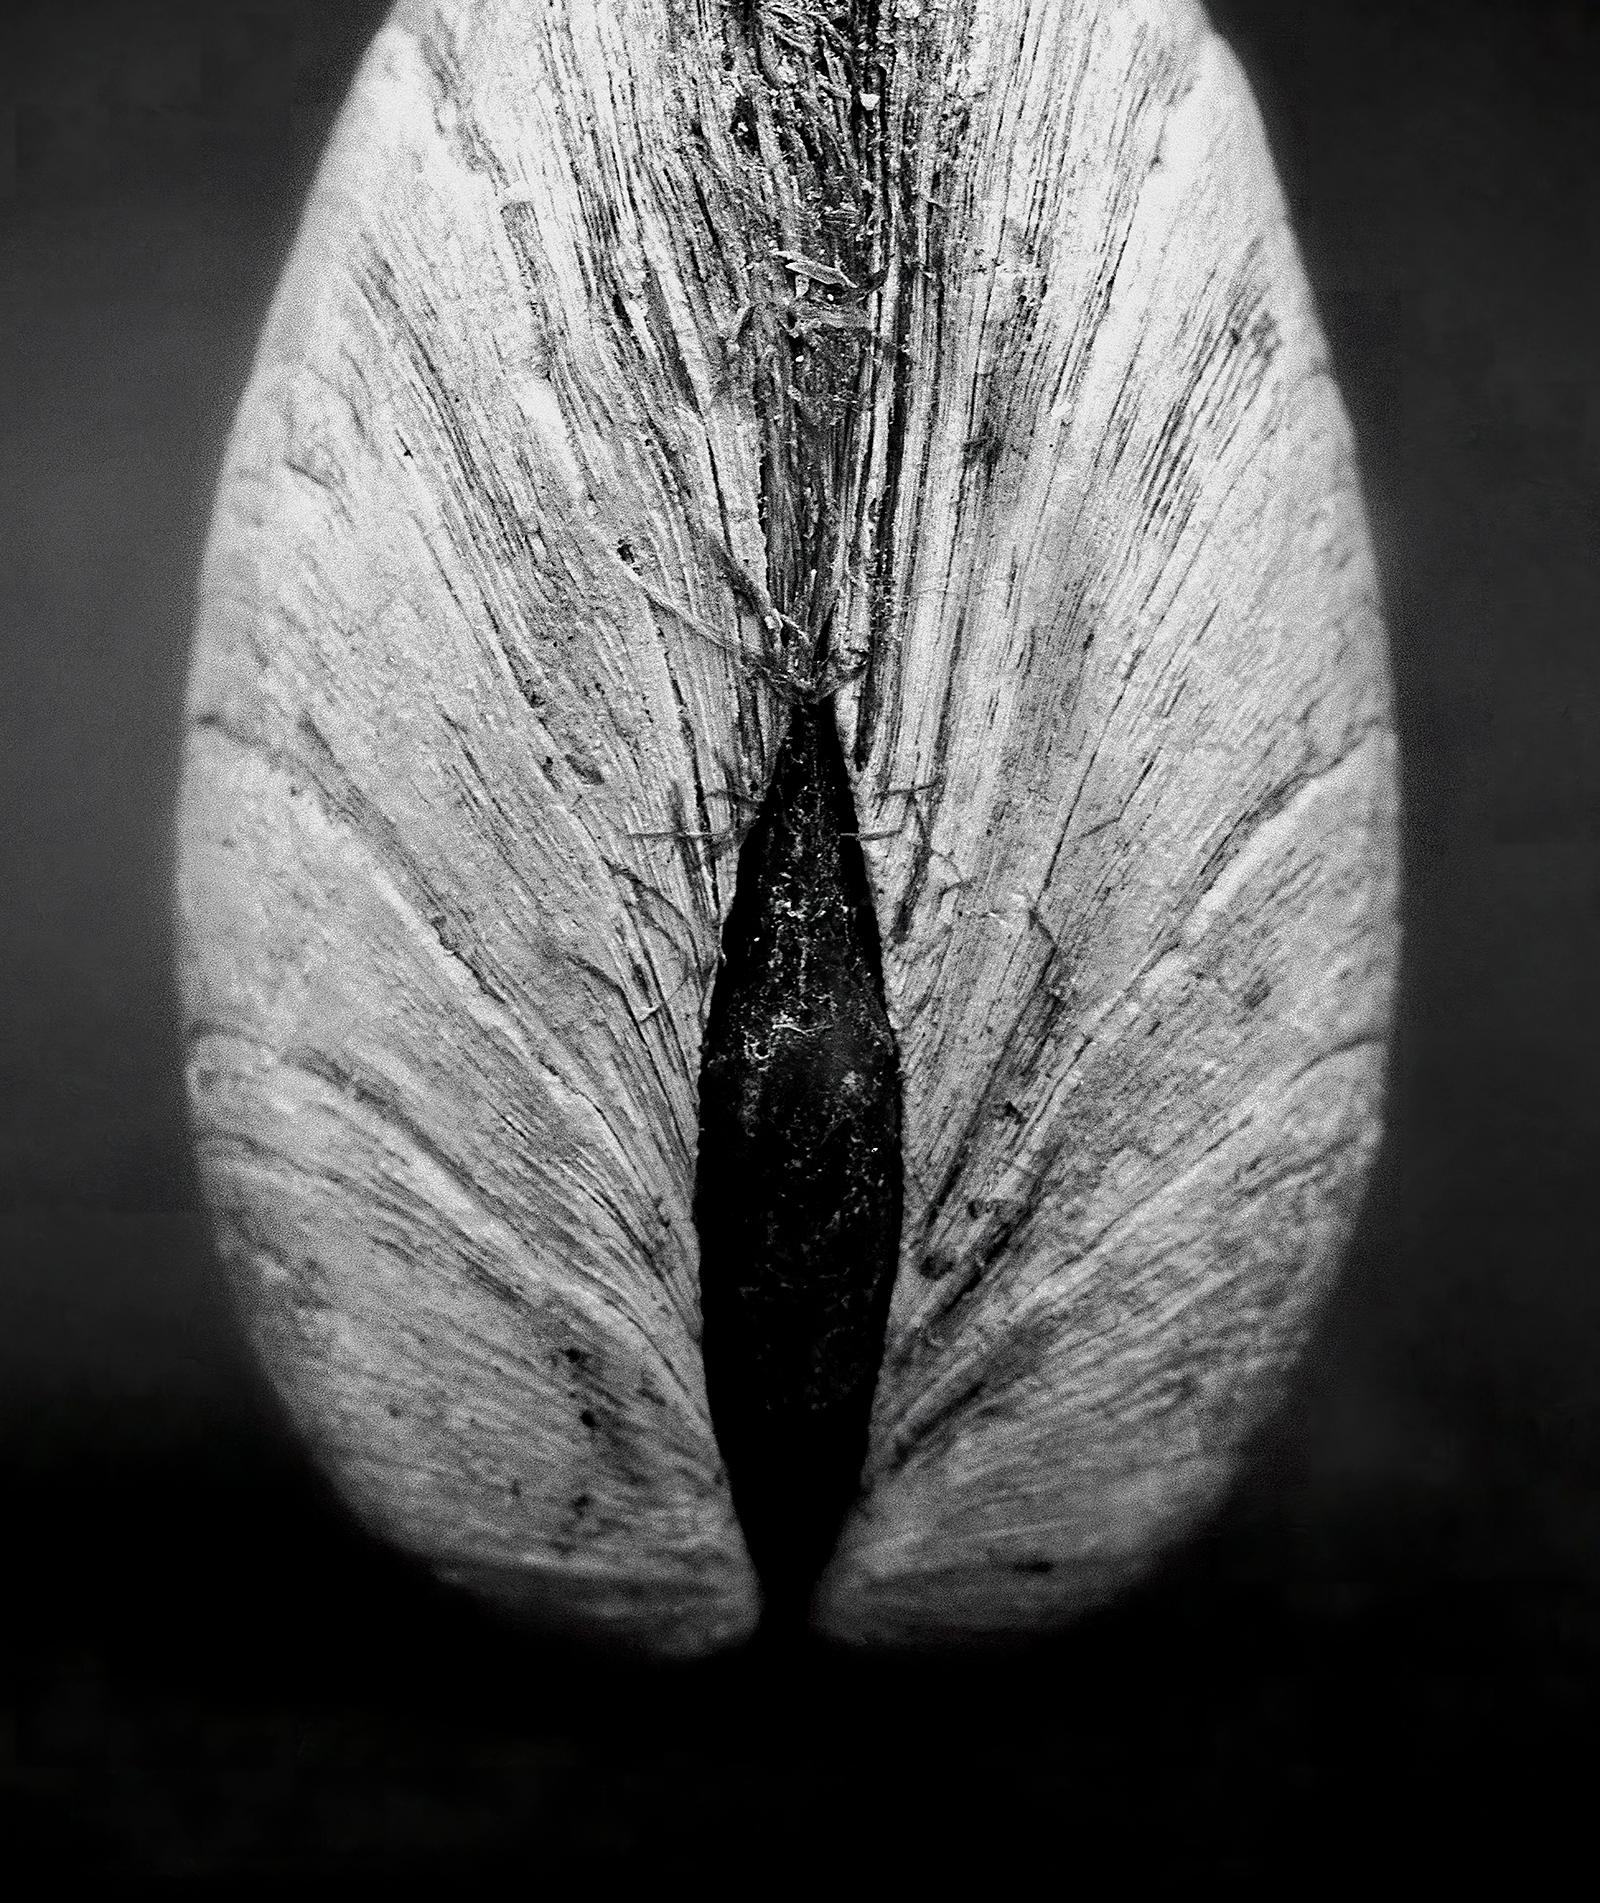 Clam 02 - Tirage d'art contemporain signé, édition limitée, carré noir et blanc  - Contemporain Photograph par Ian Sanderson